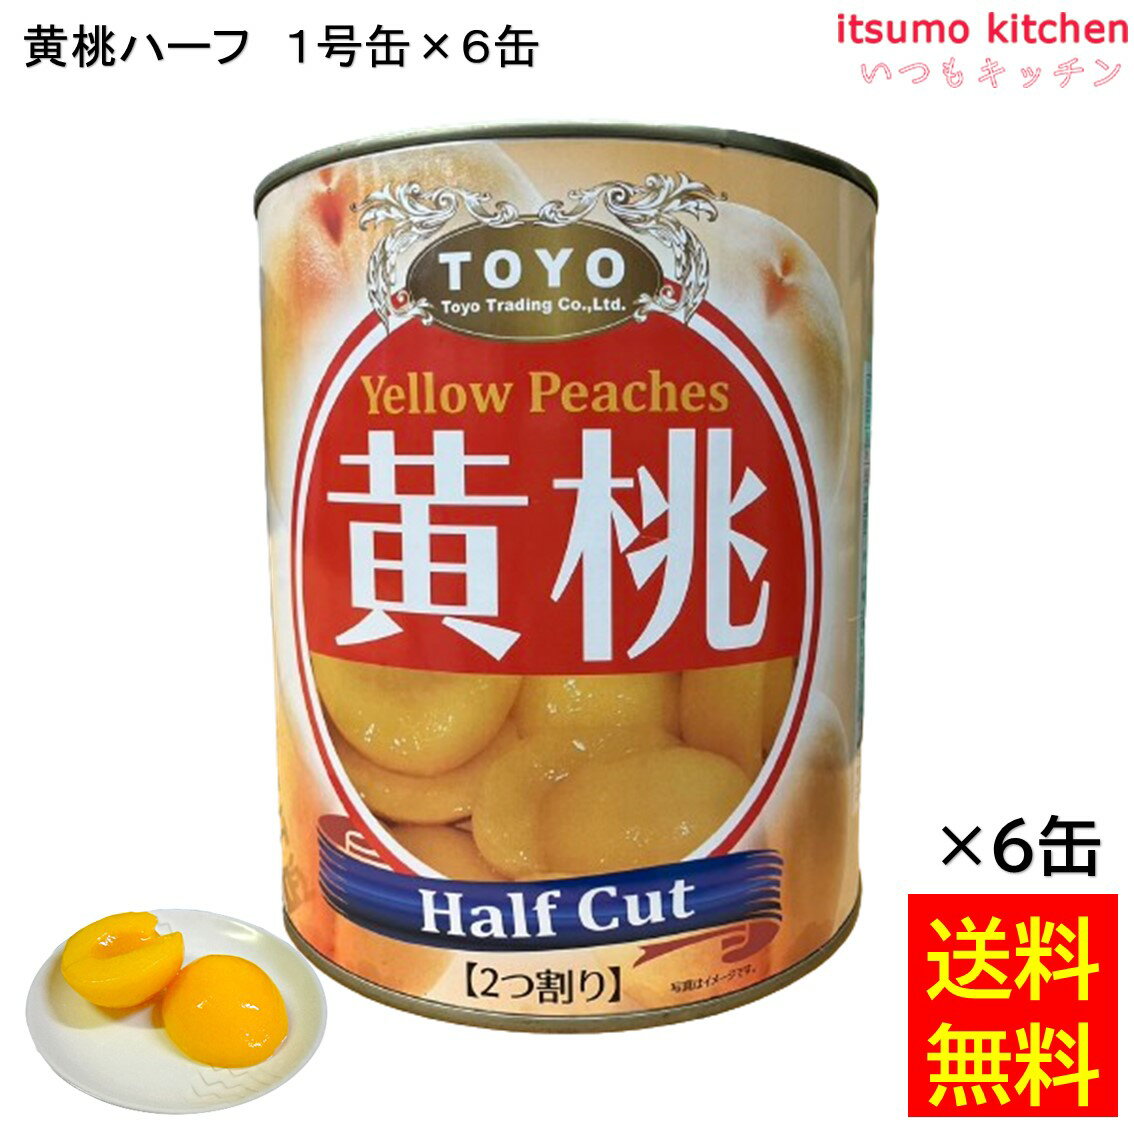 【送料無料】 缶詰 黄桃ハーフ 1号缶 3000g×6缶 東洋貿易 フルーツ 缶詰め